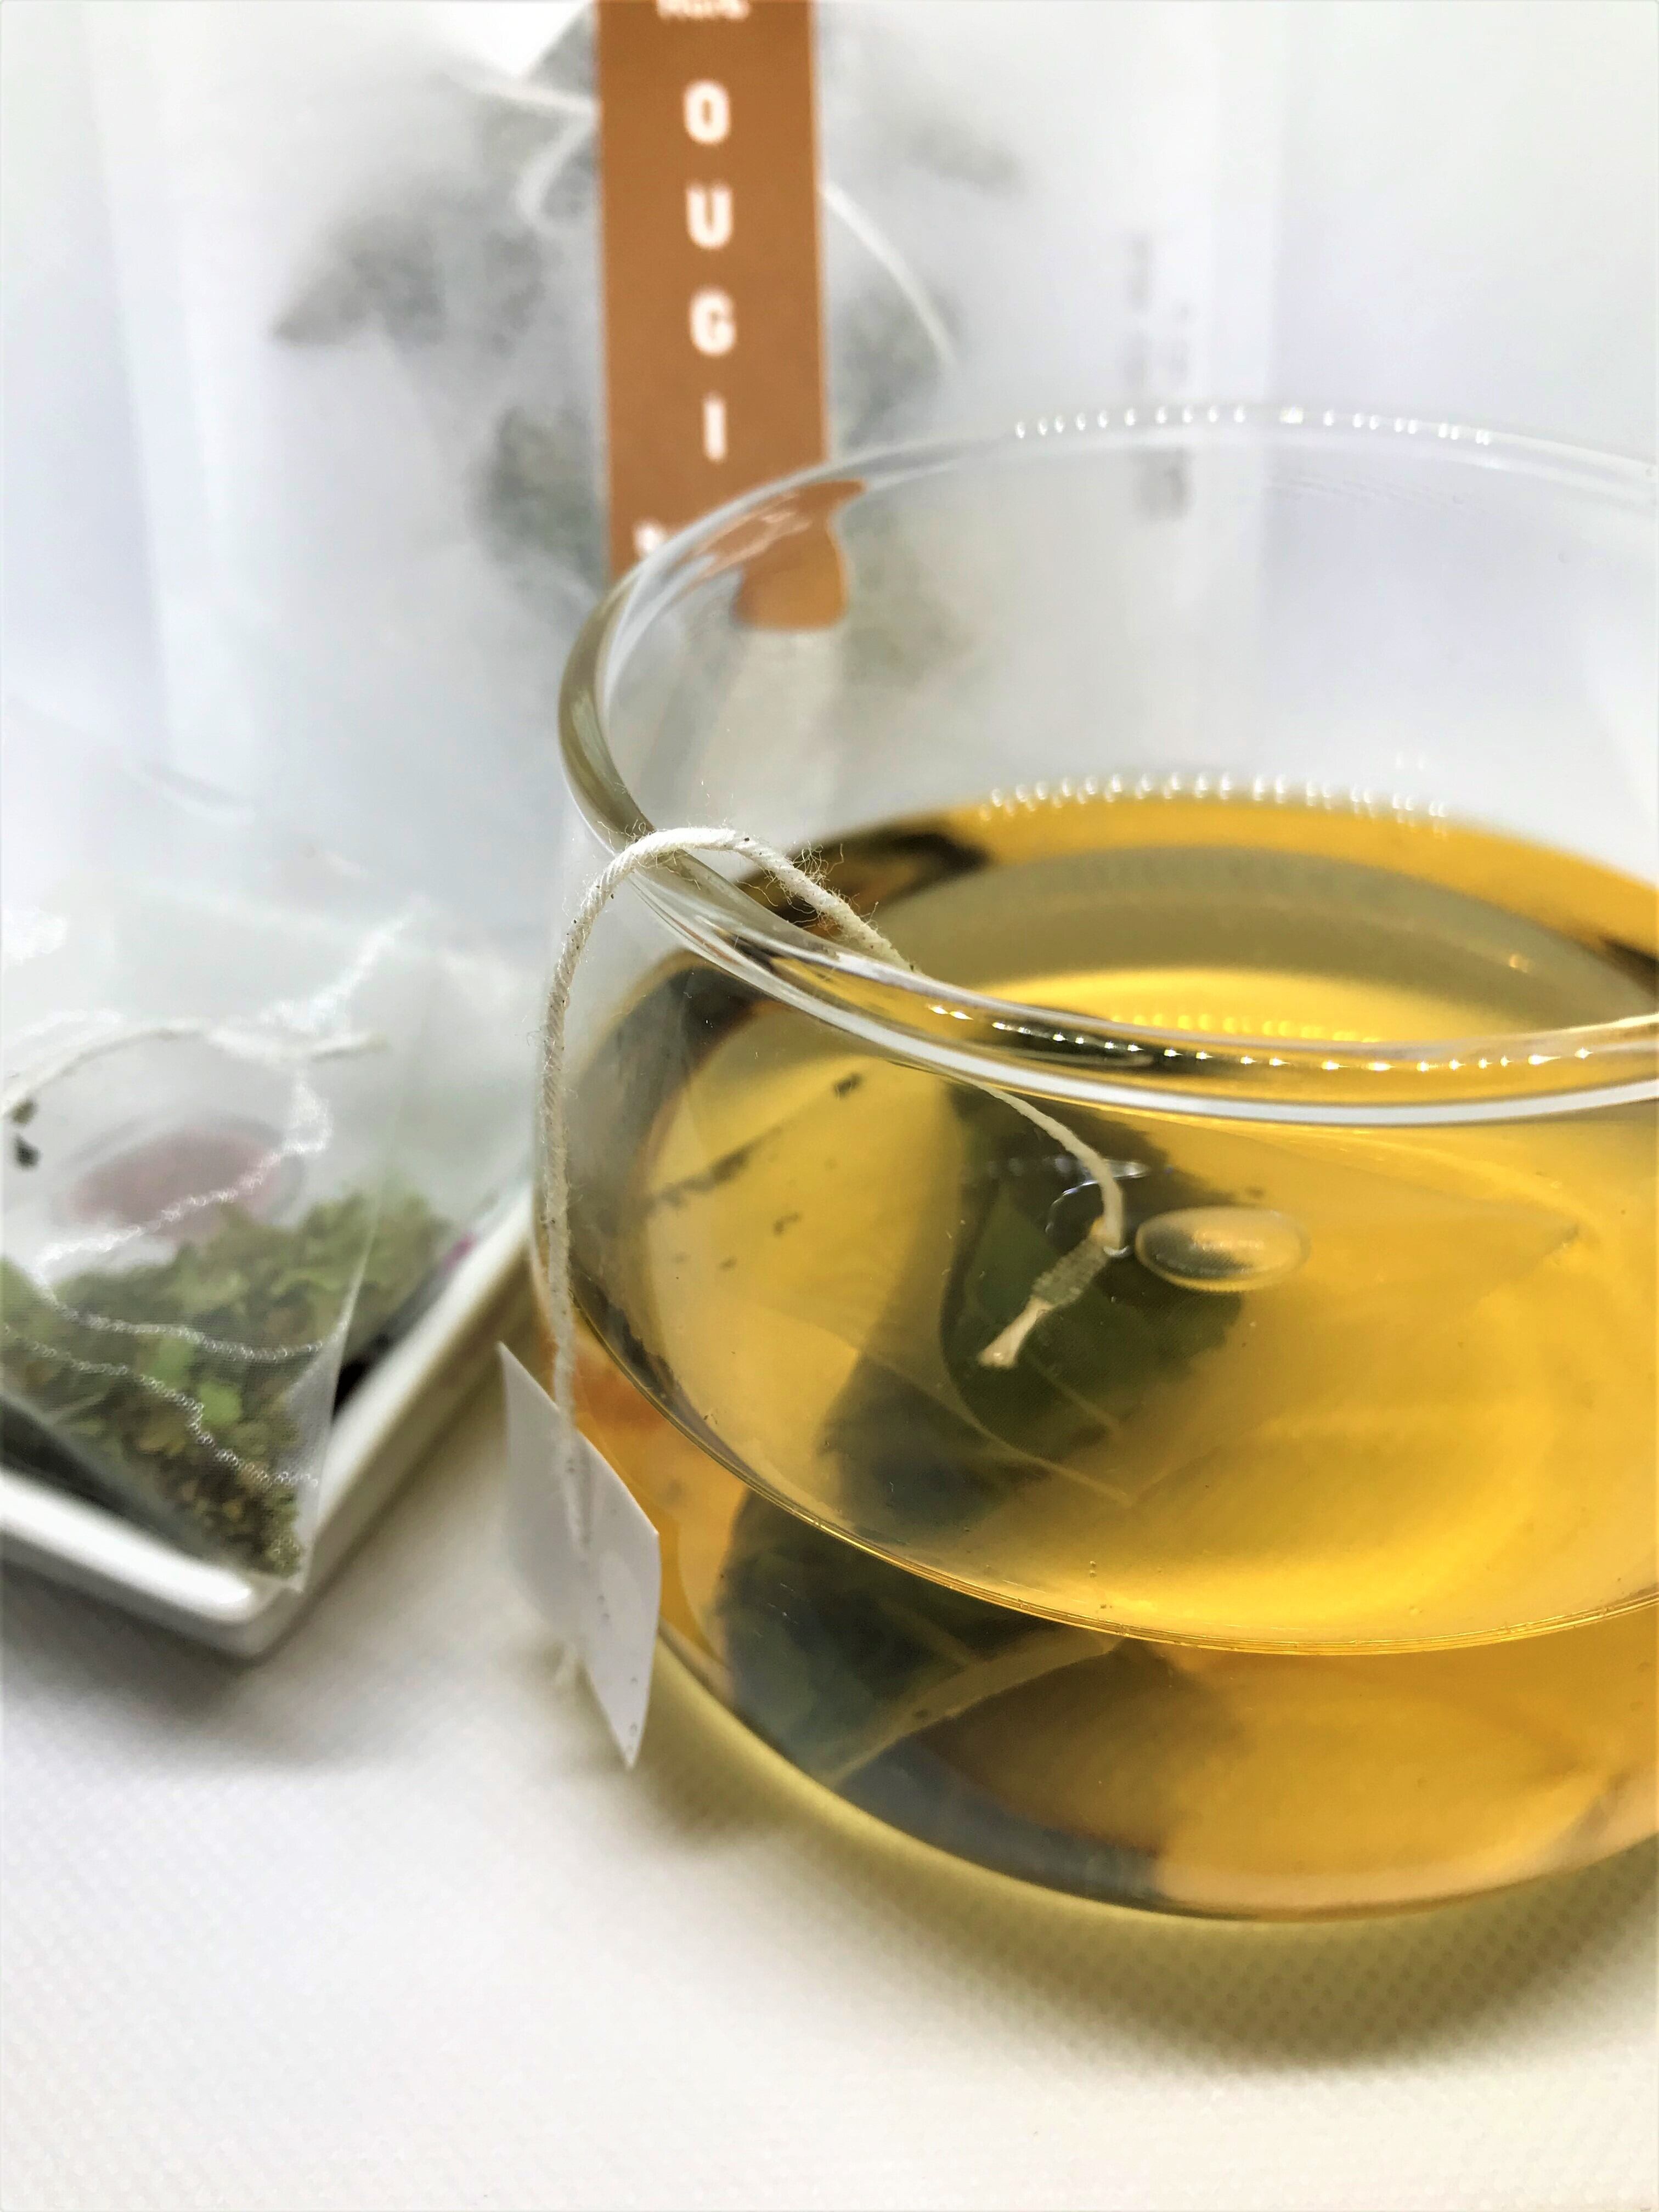 焙煎オウギ葉茶「OUGI」 ティーバッグ5包入り | 種を育てる研究所（タネラボ）